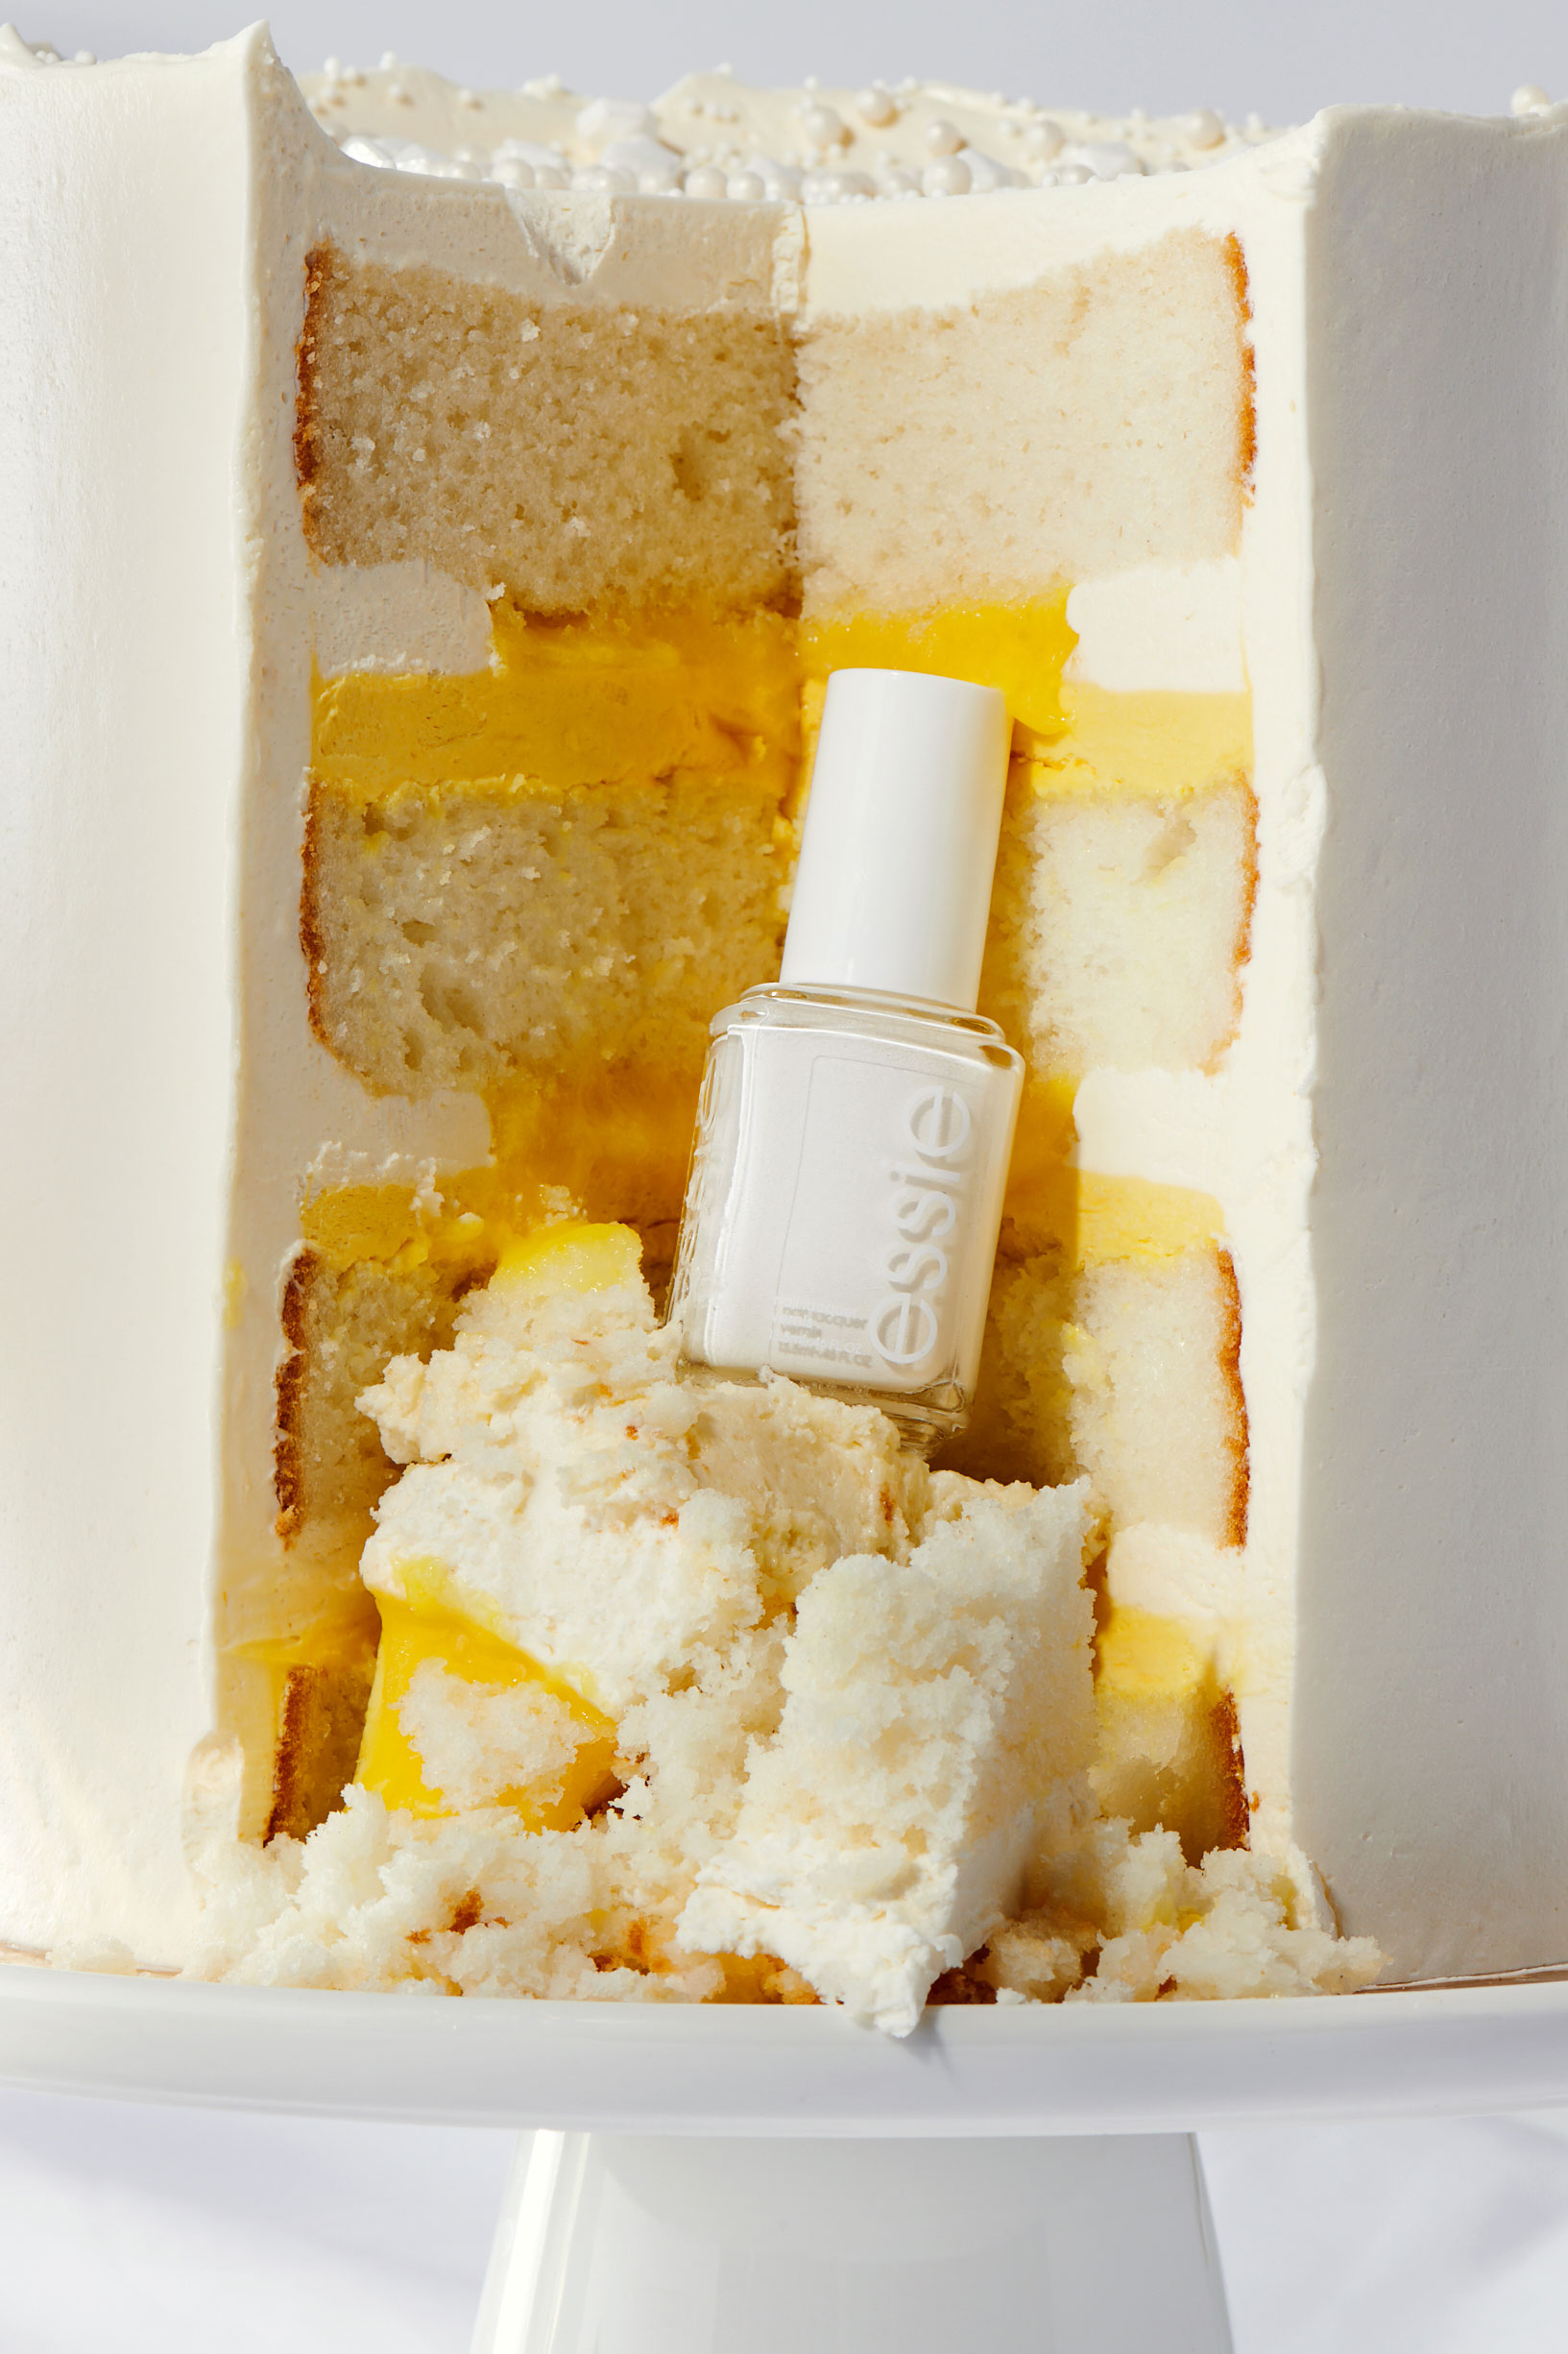 White nail polish bottle nestled in a sliced wedding cake